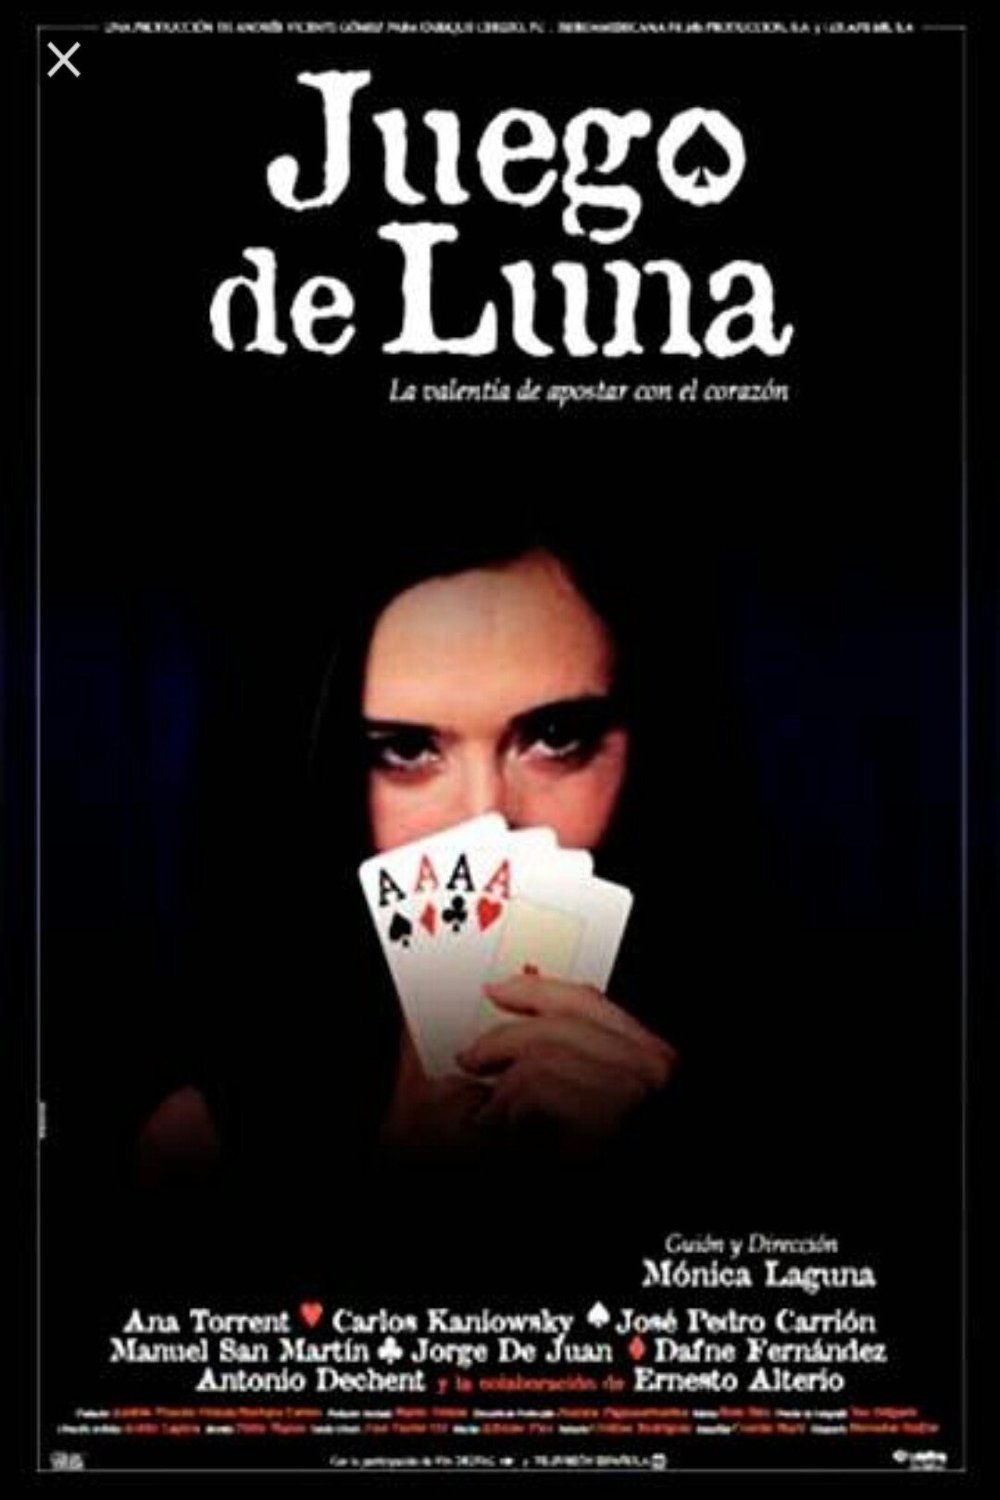 L'affiche originale du film Juego de Luna en espagnol